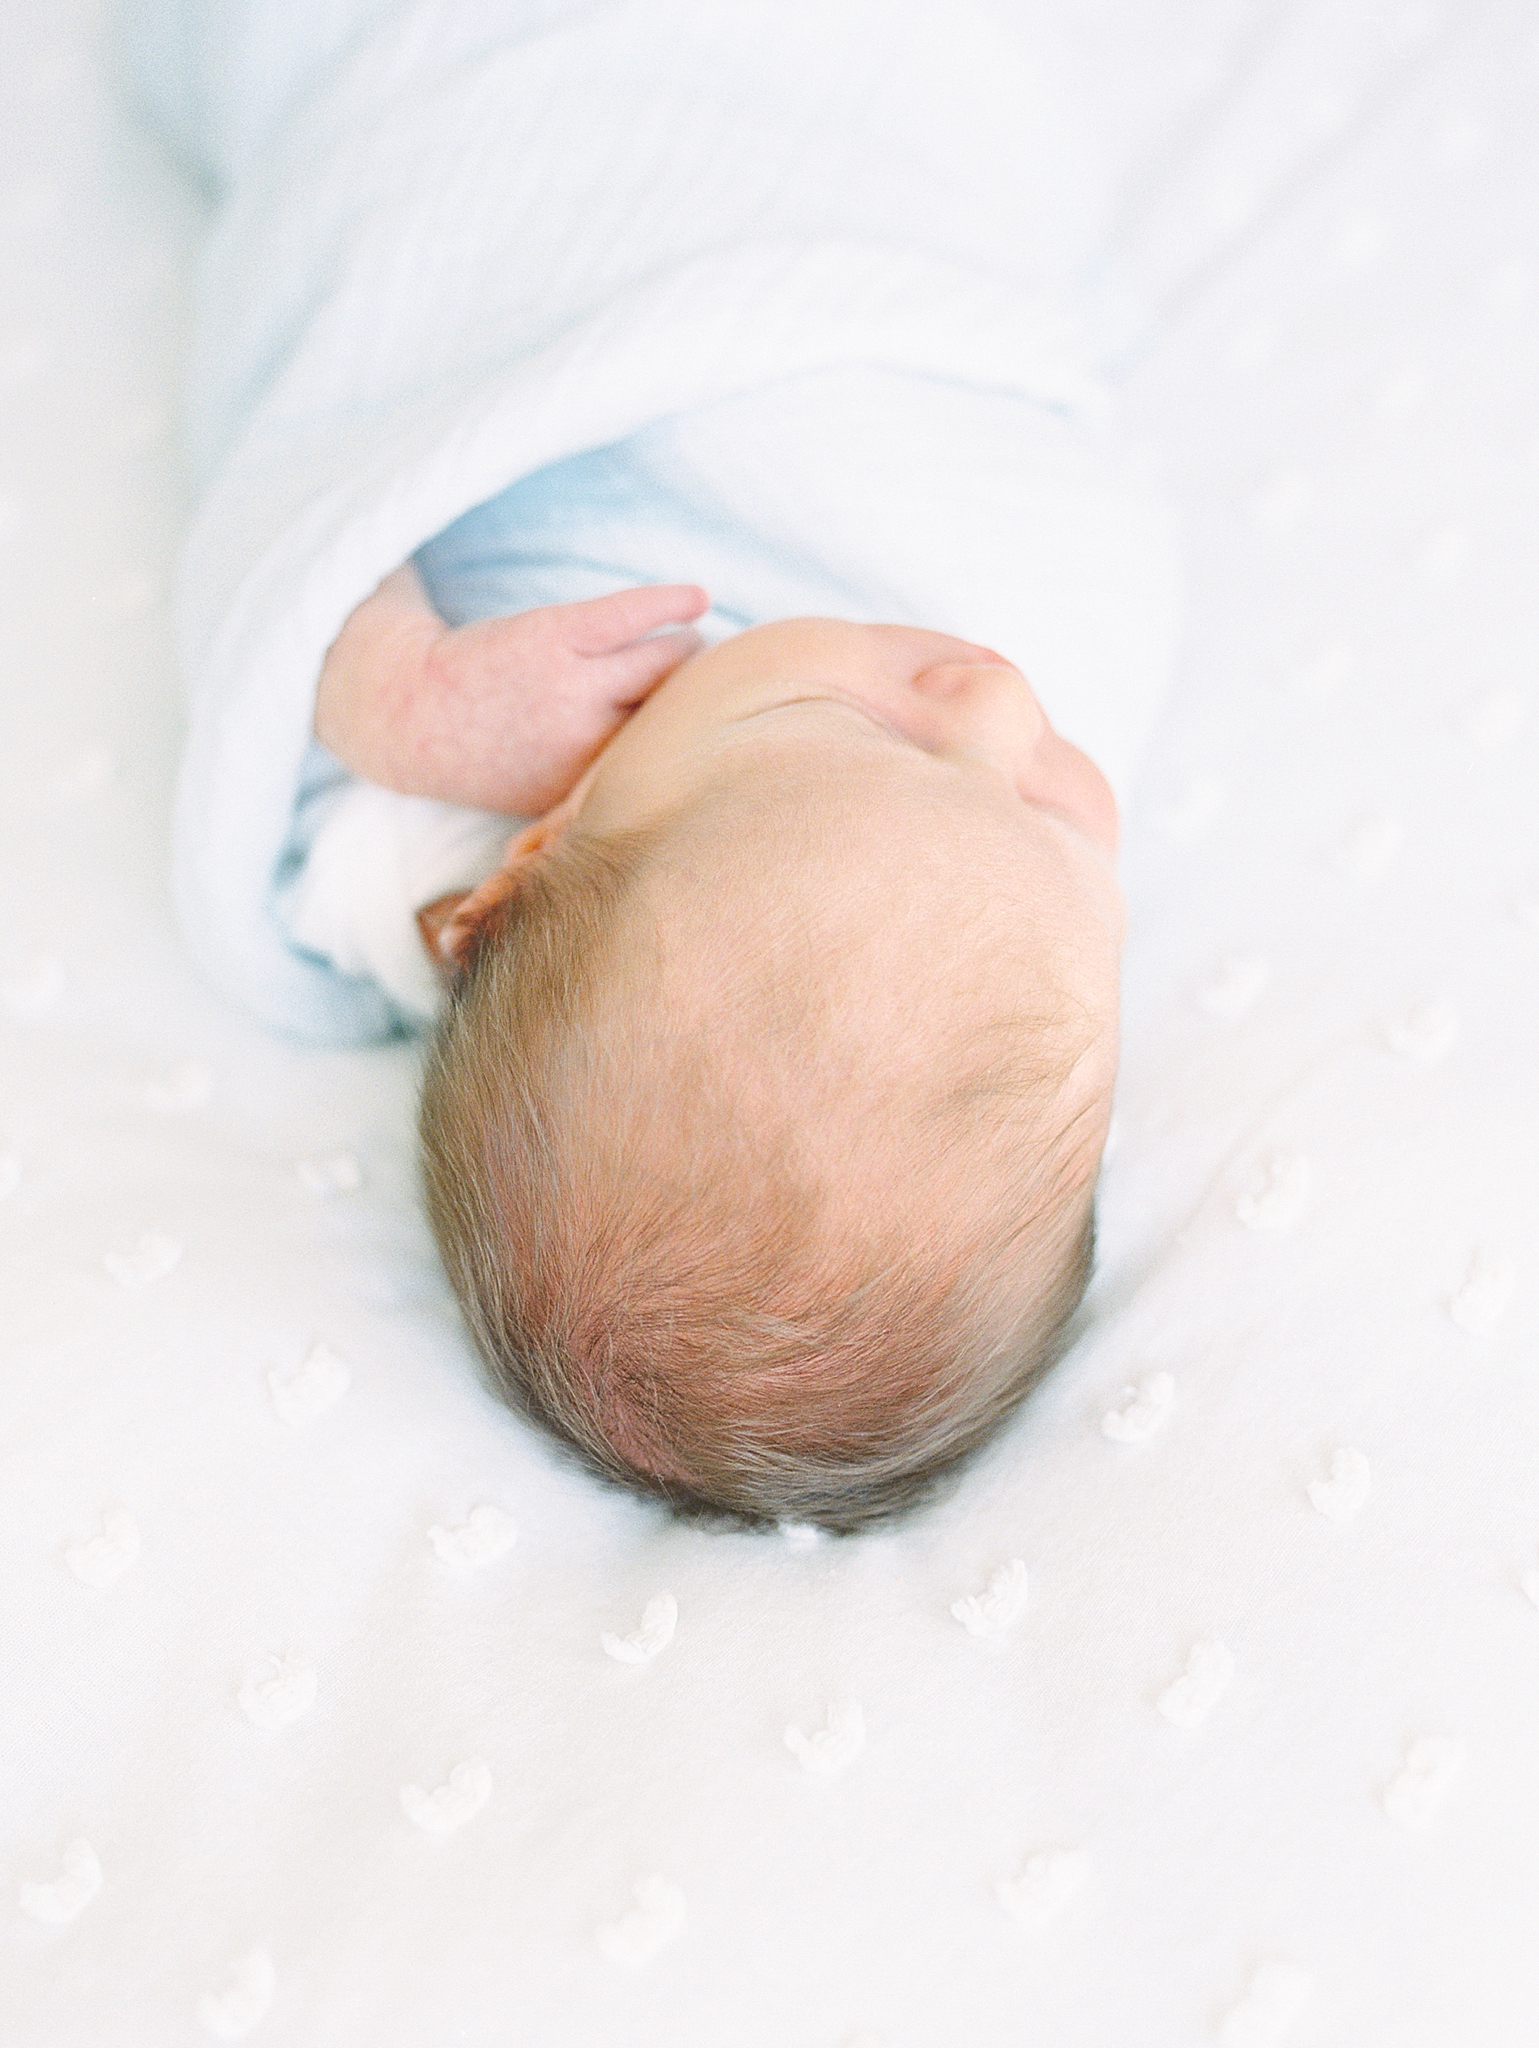 Nashville TN newborn photos at home of baby boy